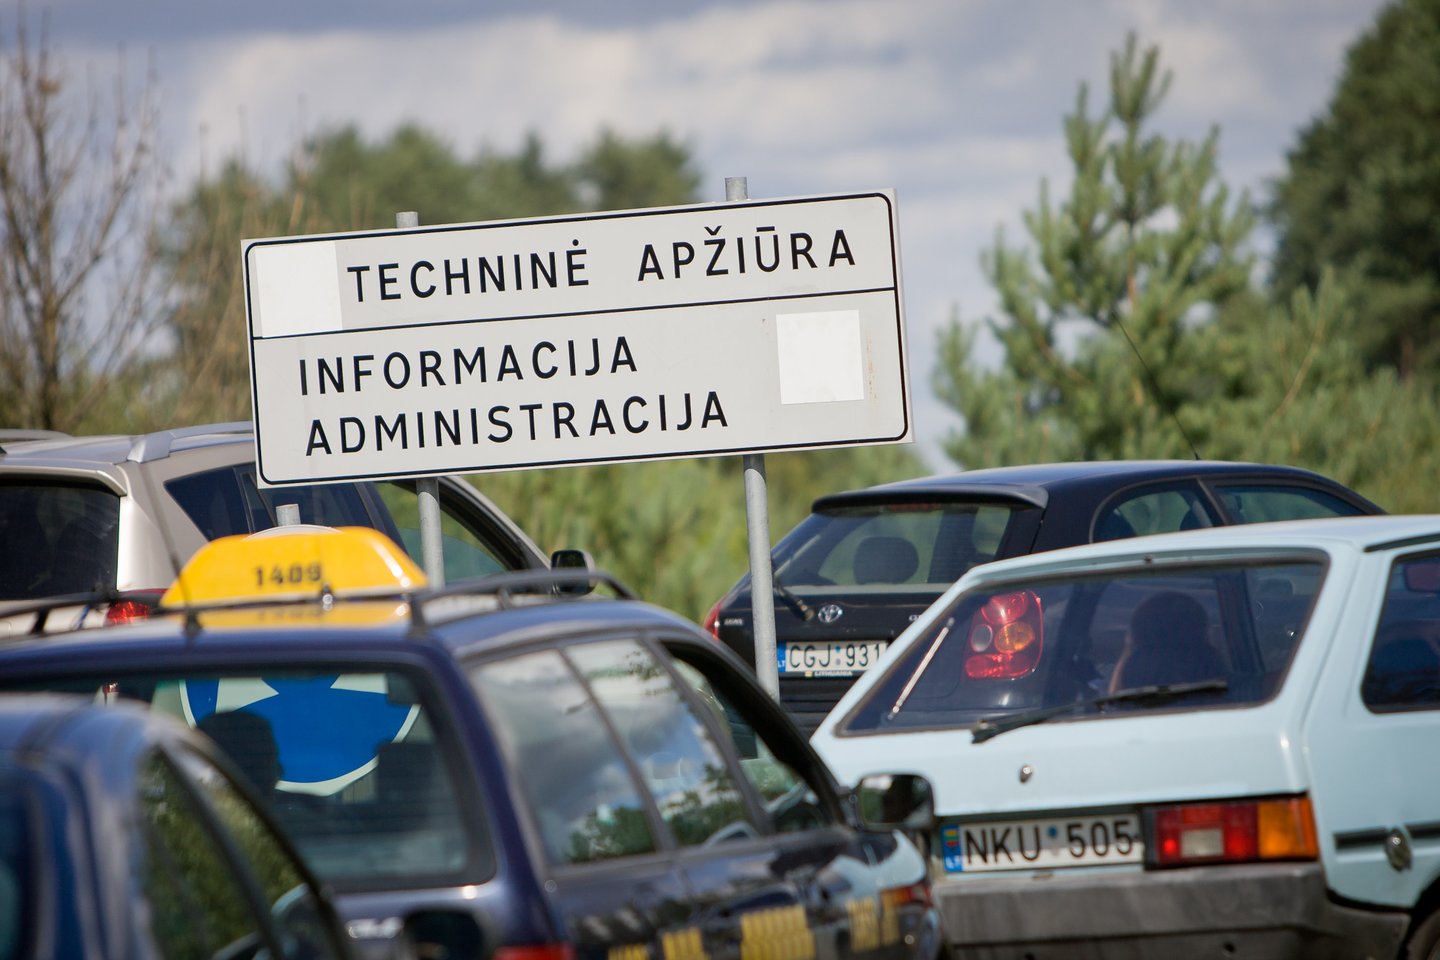 Rusijos vyriausybės priimtas sprendimas dėl panaikinamos techninės apžiūros supykdė ne vieną Lietuvos automobilių ekspertą.<br>D.Umbraso nuotr.